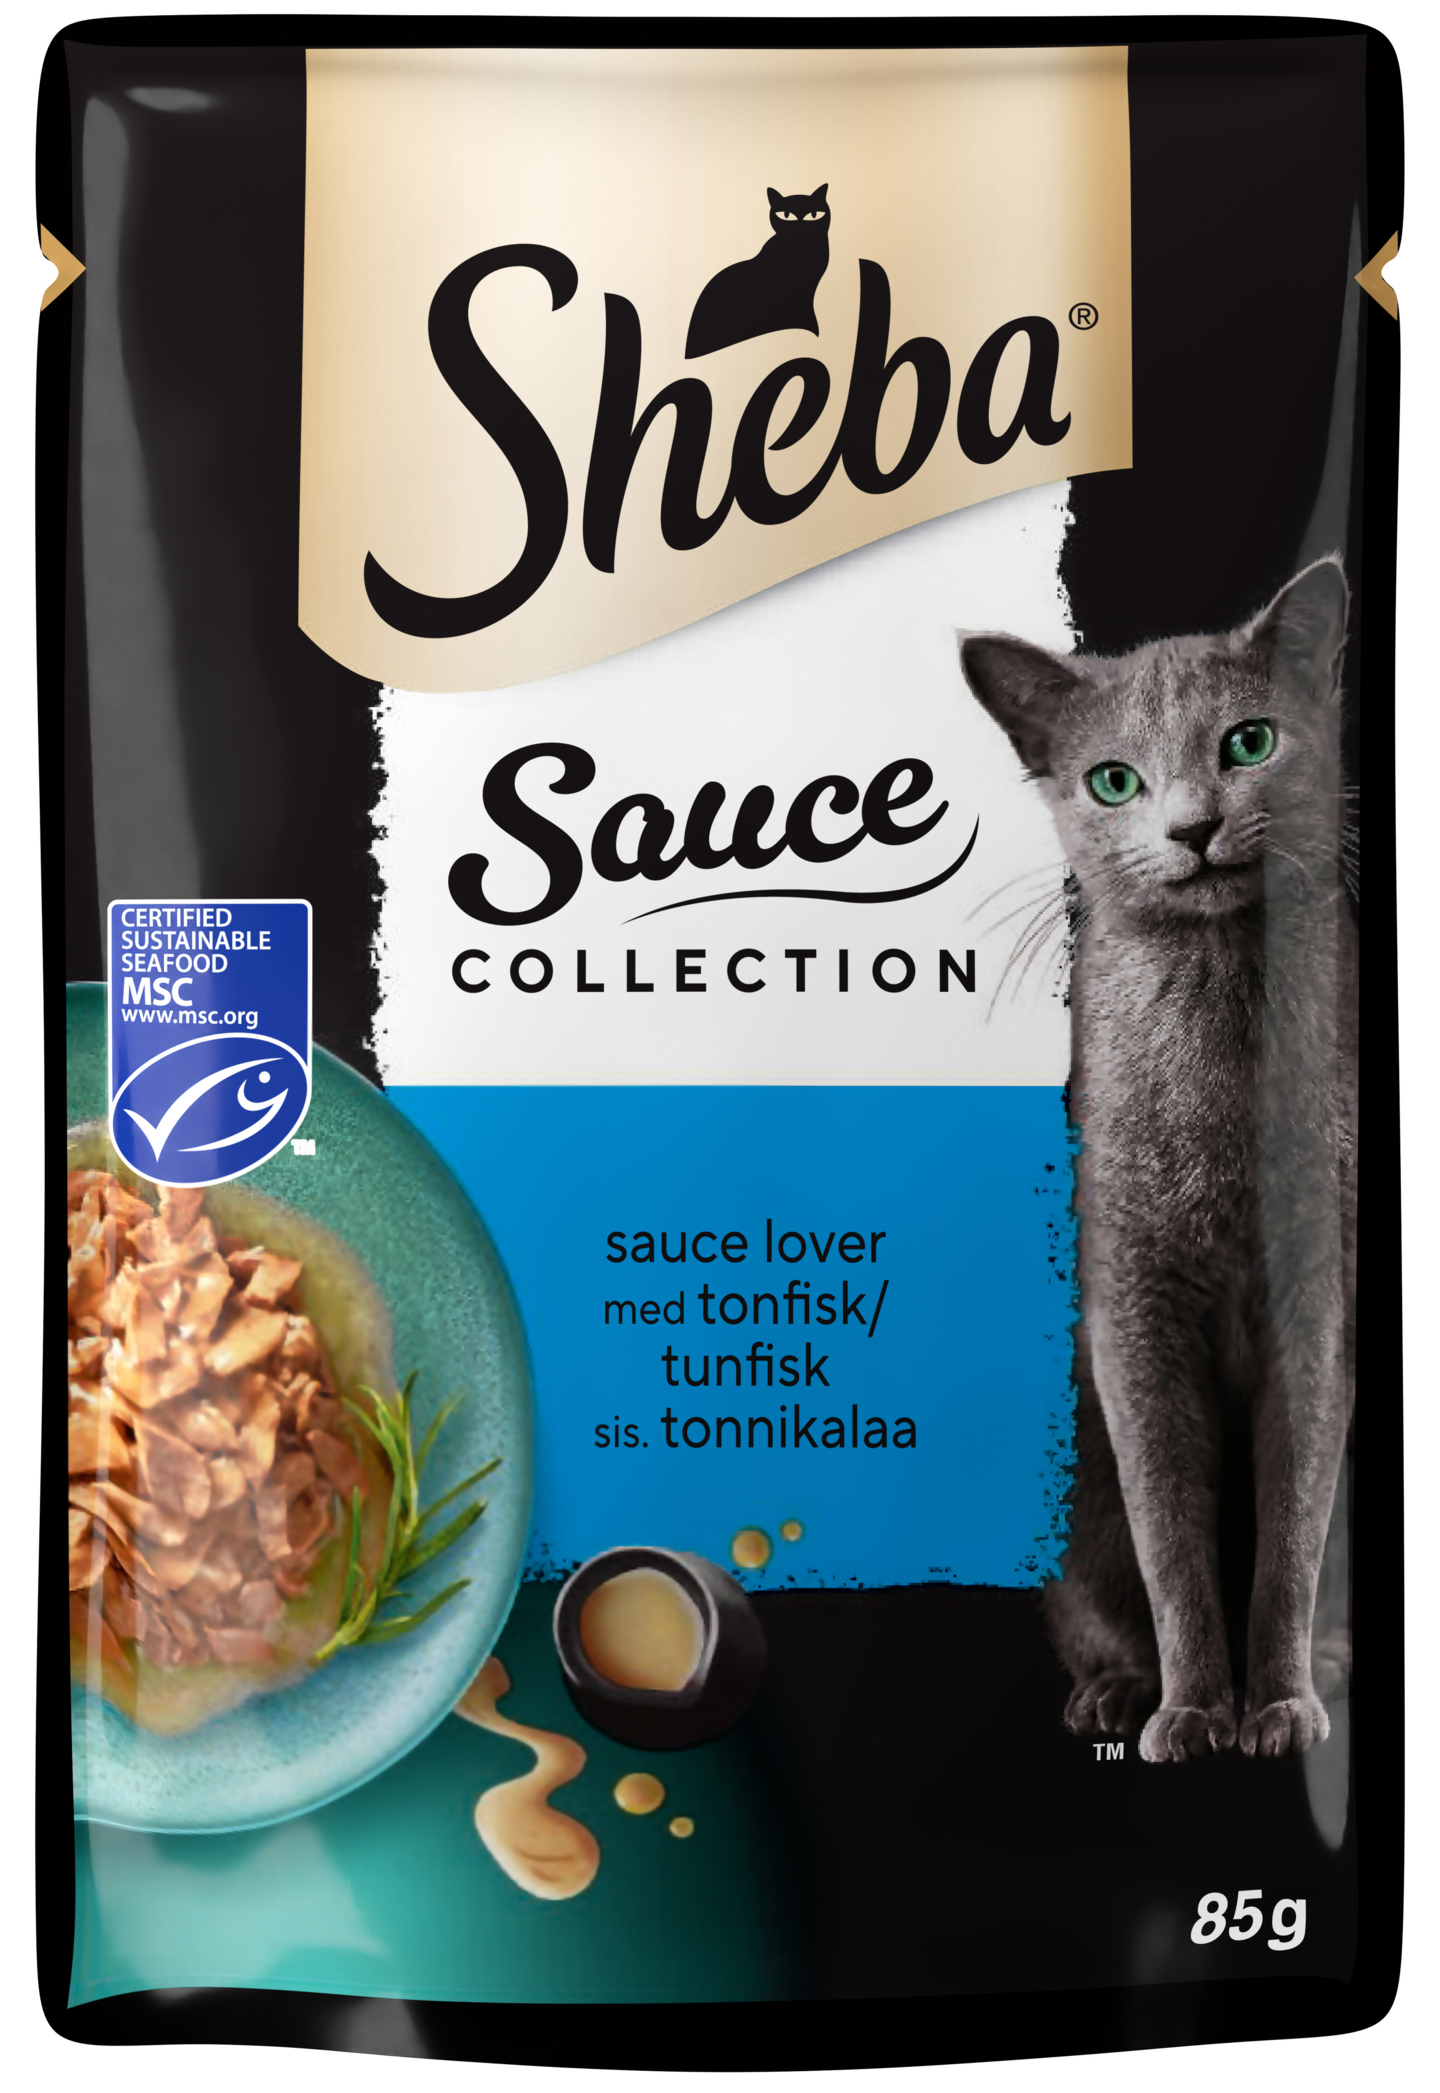 Sheba Sauce Collection 85g tonnikala